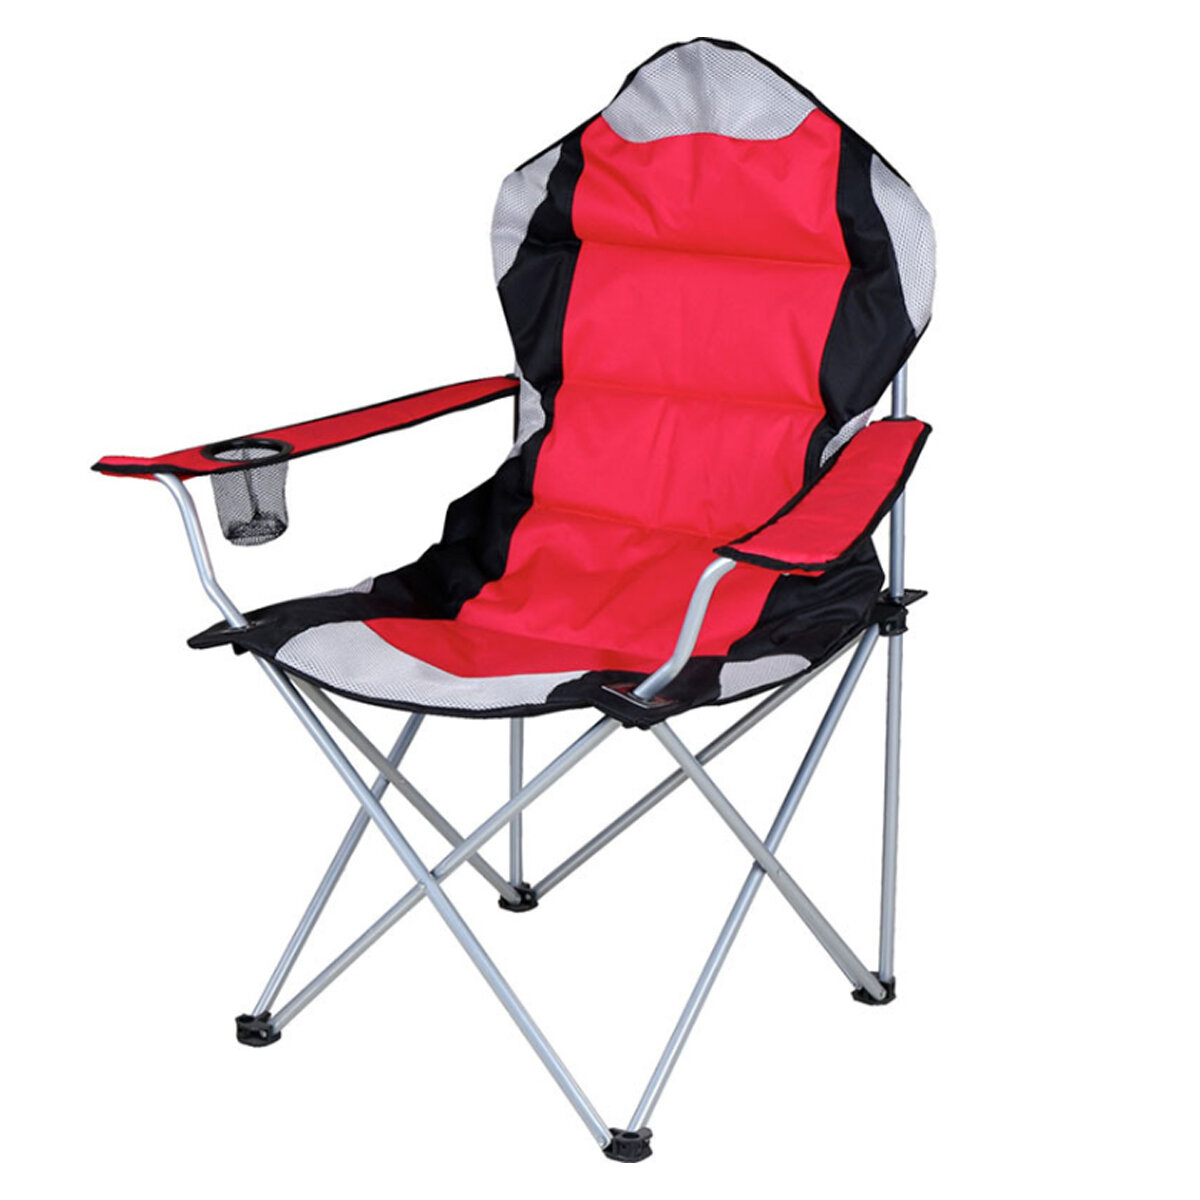 60x60x100CM Katlanabilir Kamp Sandalyesi, Ağır Görevli Taşınabilir Balık Sandalyesi, Bardak Tutuculu Ultralight Plaj Koltuğu.